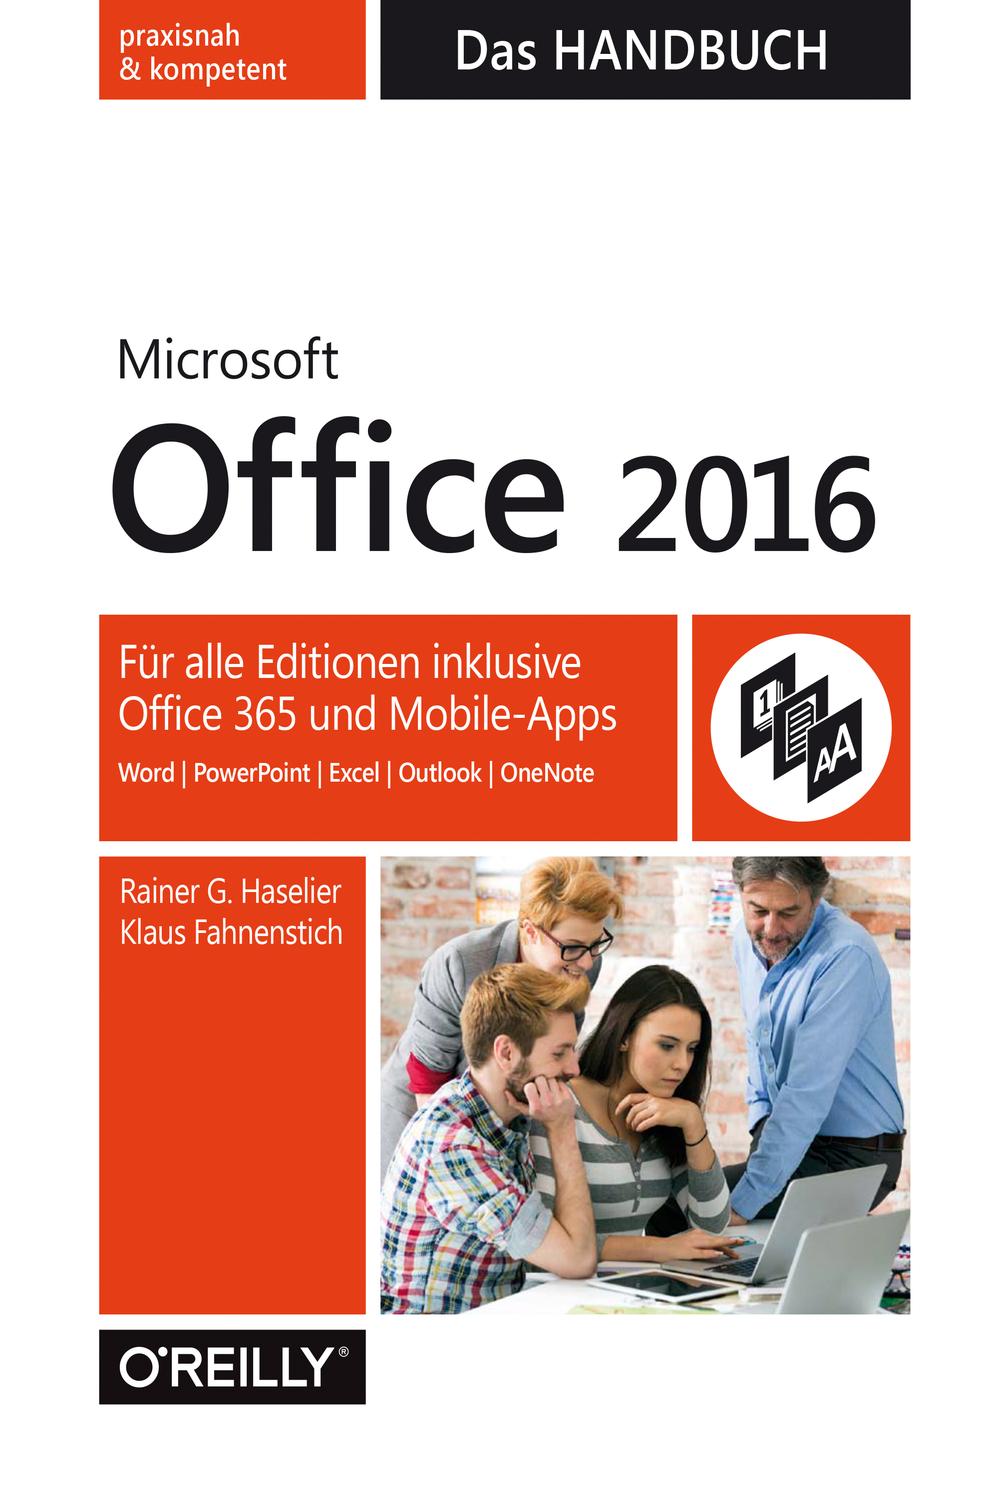 Microsoft Office 2016 - Das Handbuch - Rainer Haselier, Klaus Fahnenstich